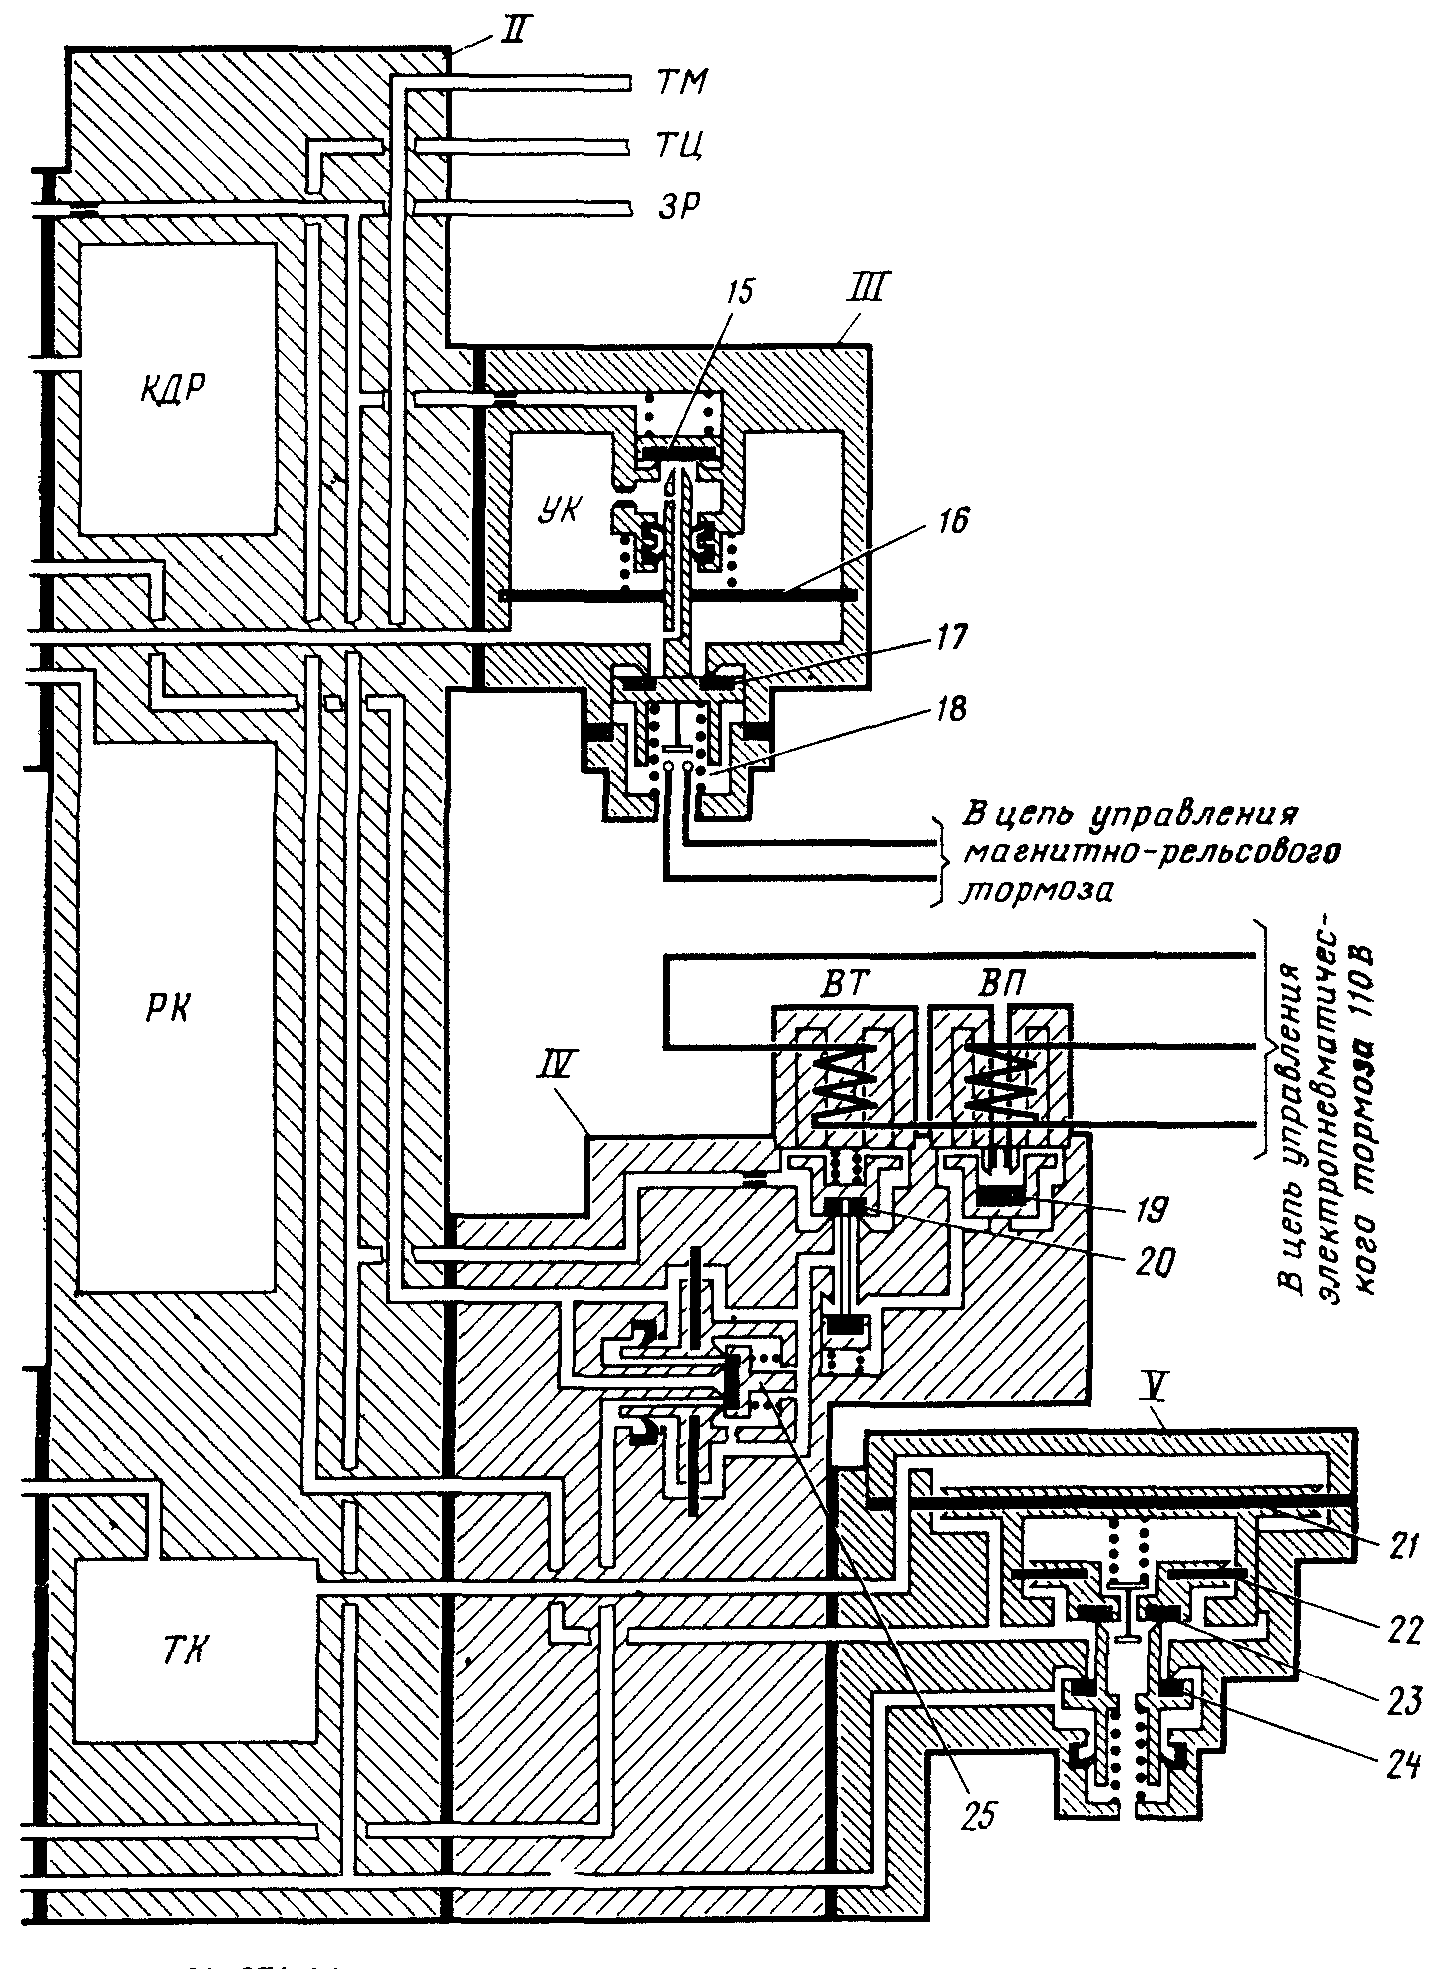 Схема электровоздухораспределителя № 371 — 14 2